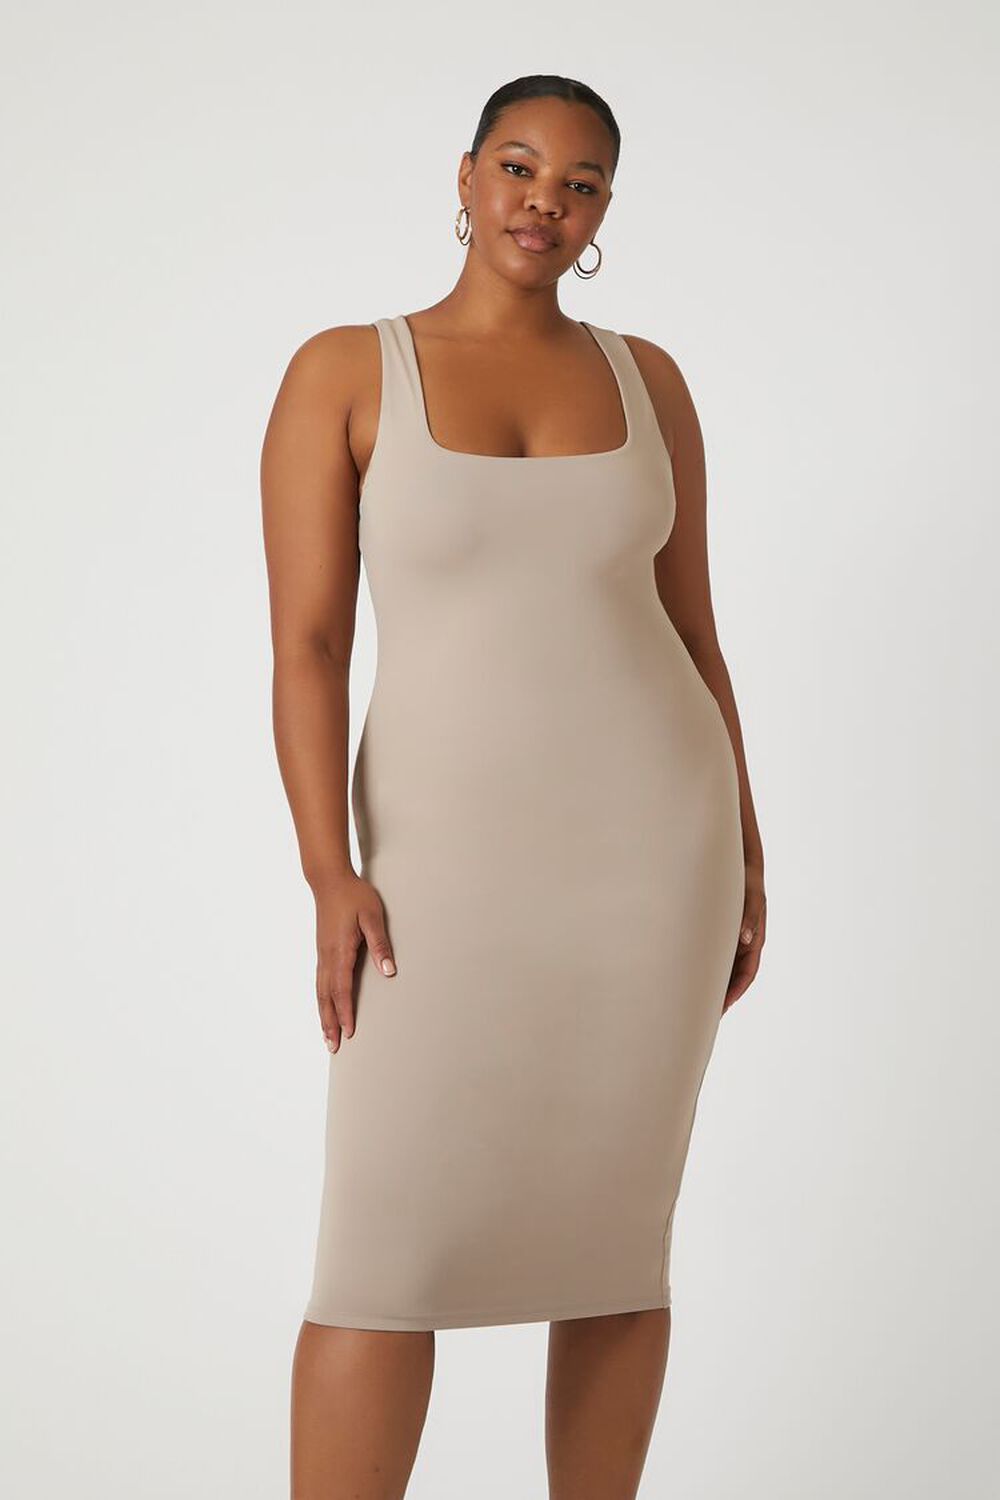 GOAT Plus Size Sleeveless Midi Dress, image 2